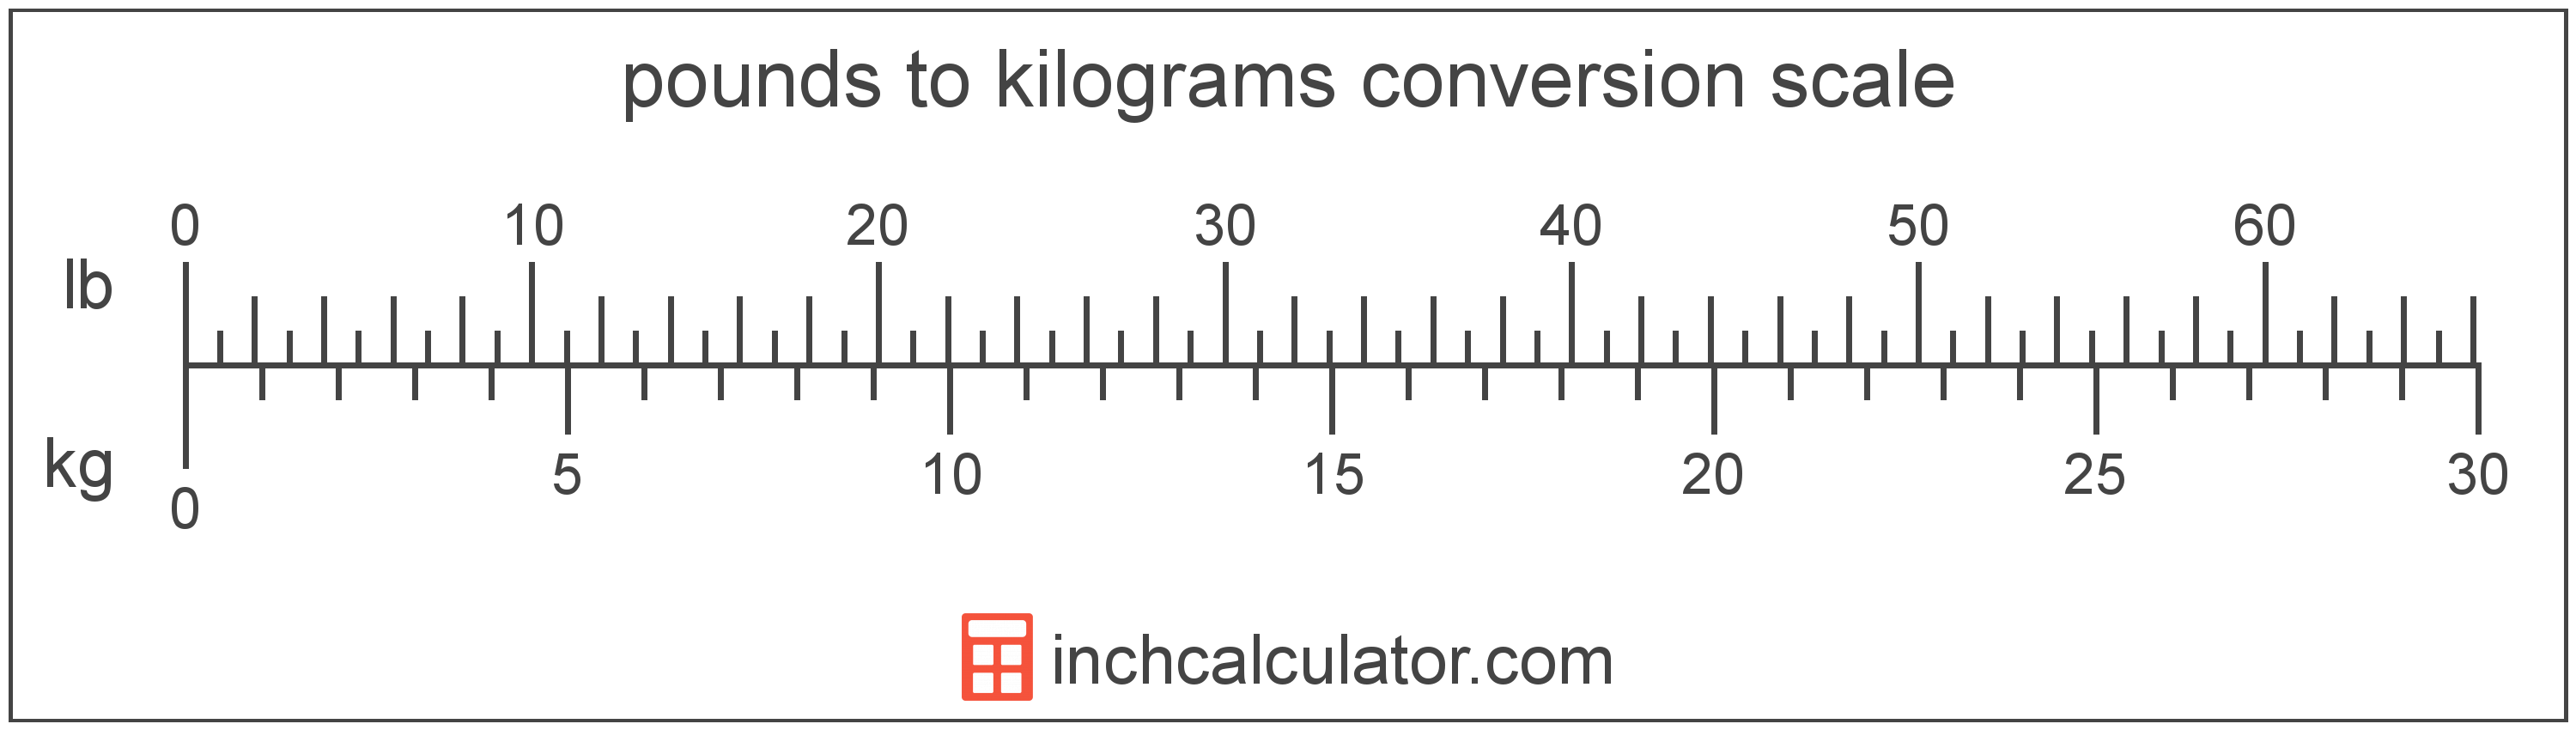 Kilograms To Pounds Ounces Conversion Kg To Lb The formula to convert kg to lbs. kilograms to pounds ounces conversion